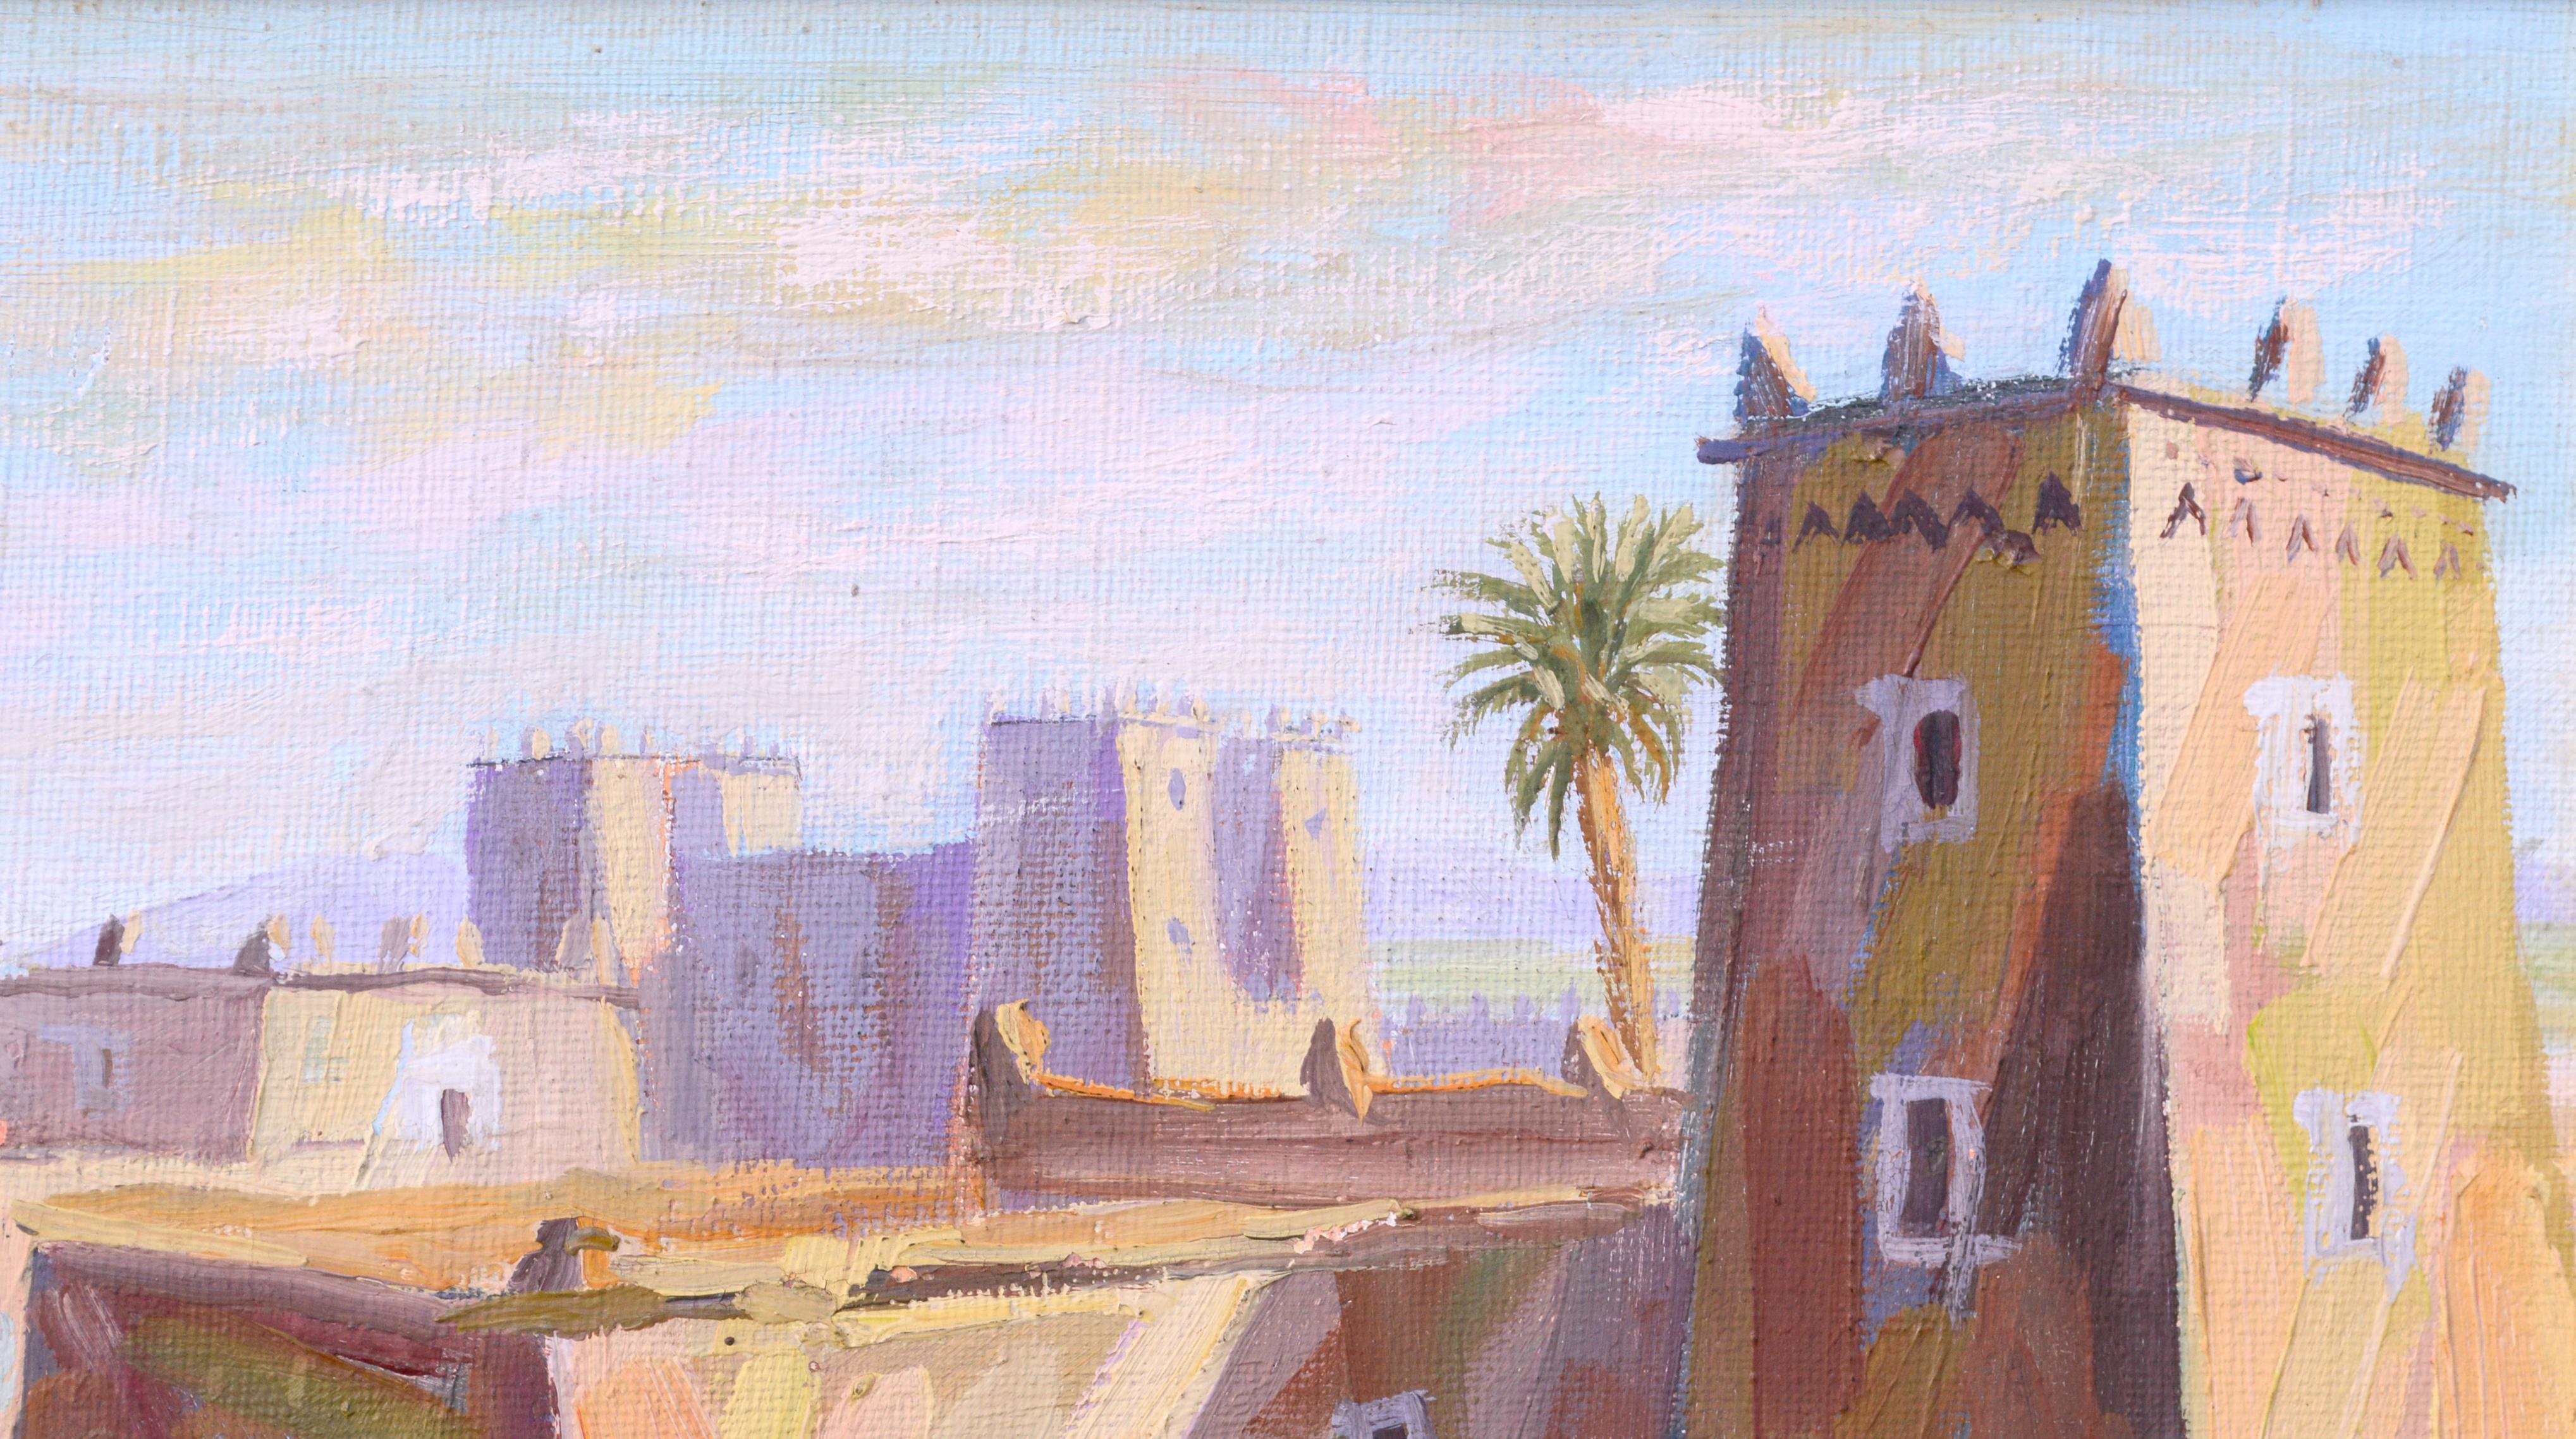 Scène de rue du Moyen-Orient, paysage de village figuratif à petite échelle  - Impressionnisme Painting par Boukhari